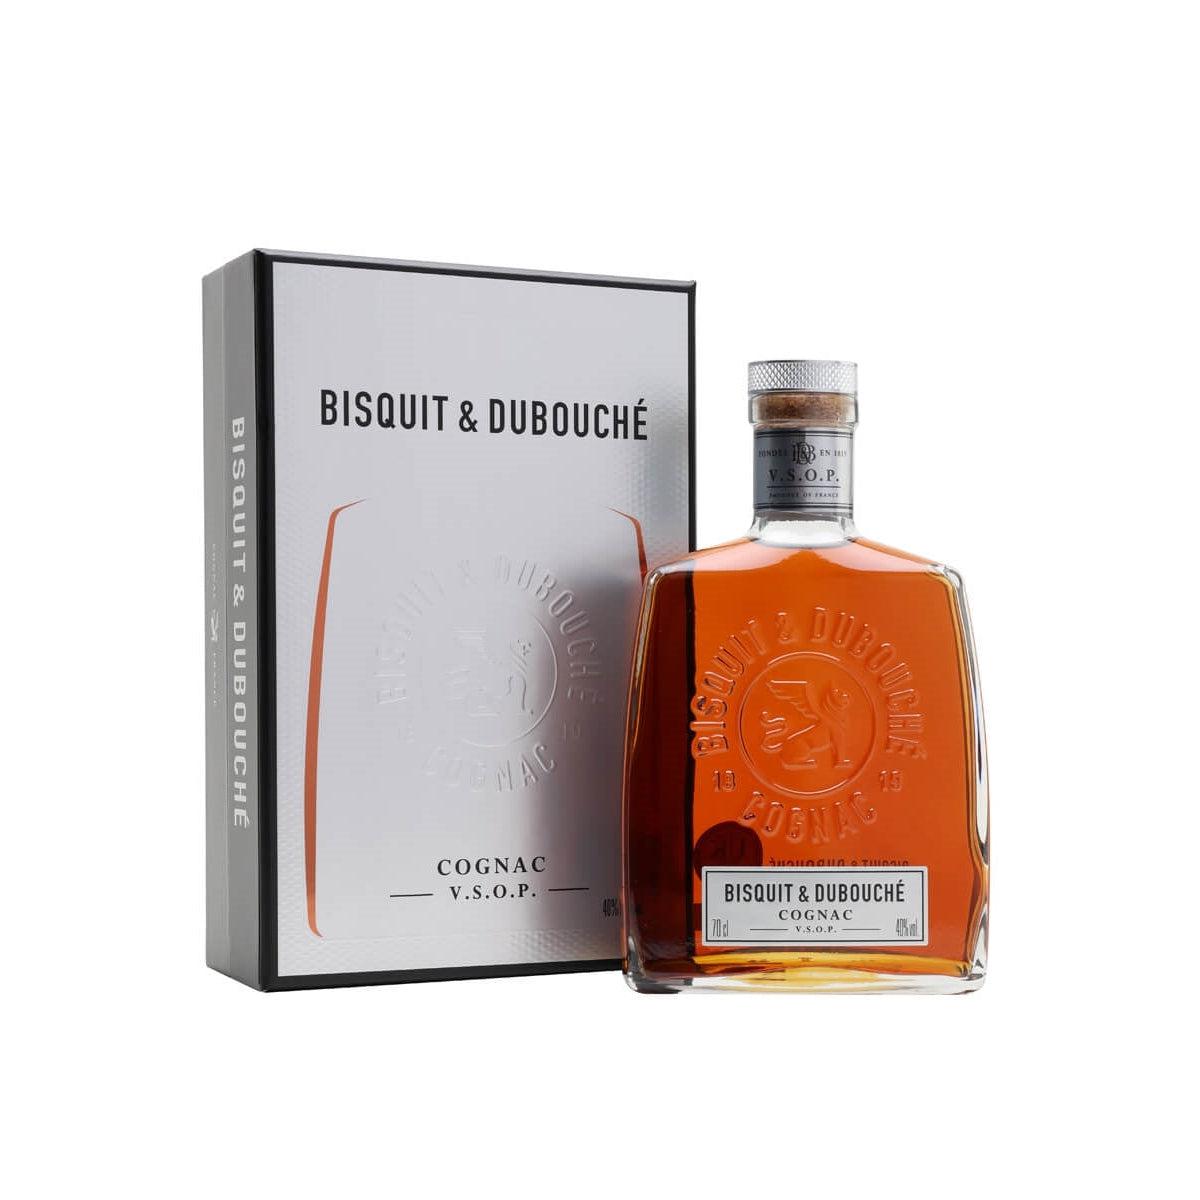 Bisquit and Dubouché VSOP Cognac